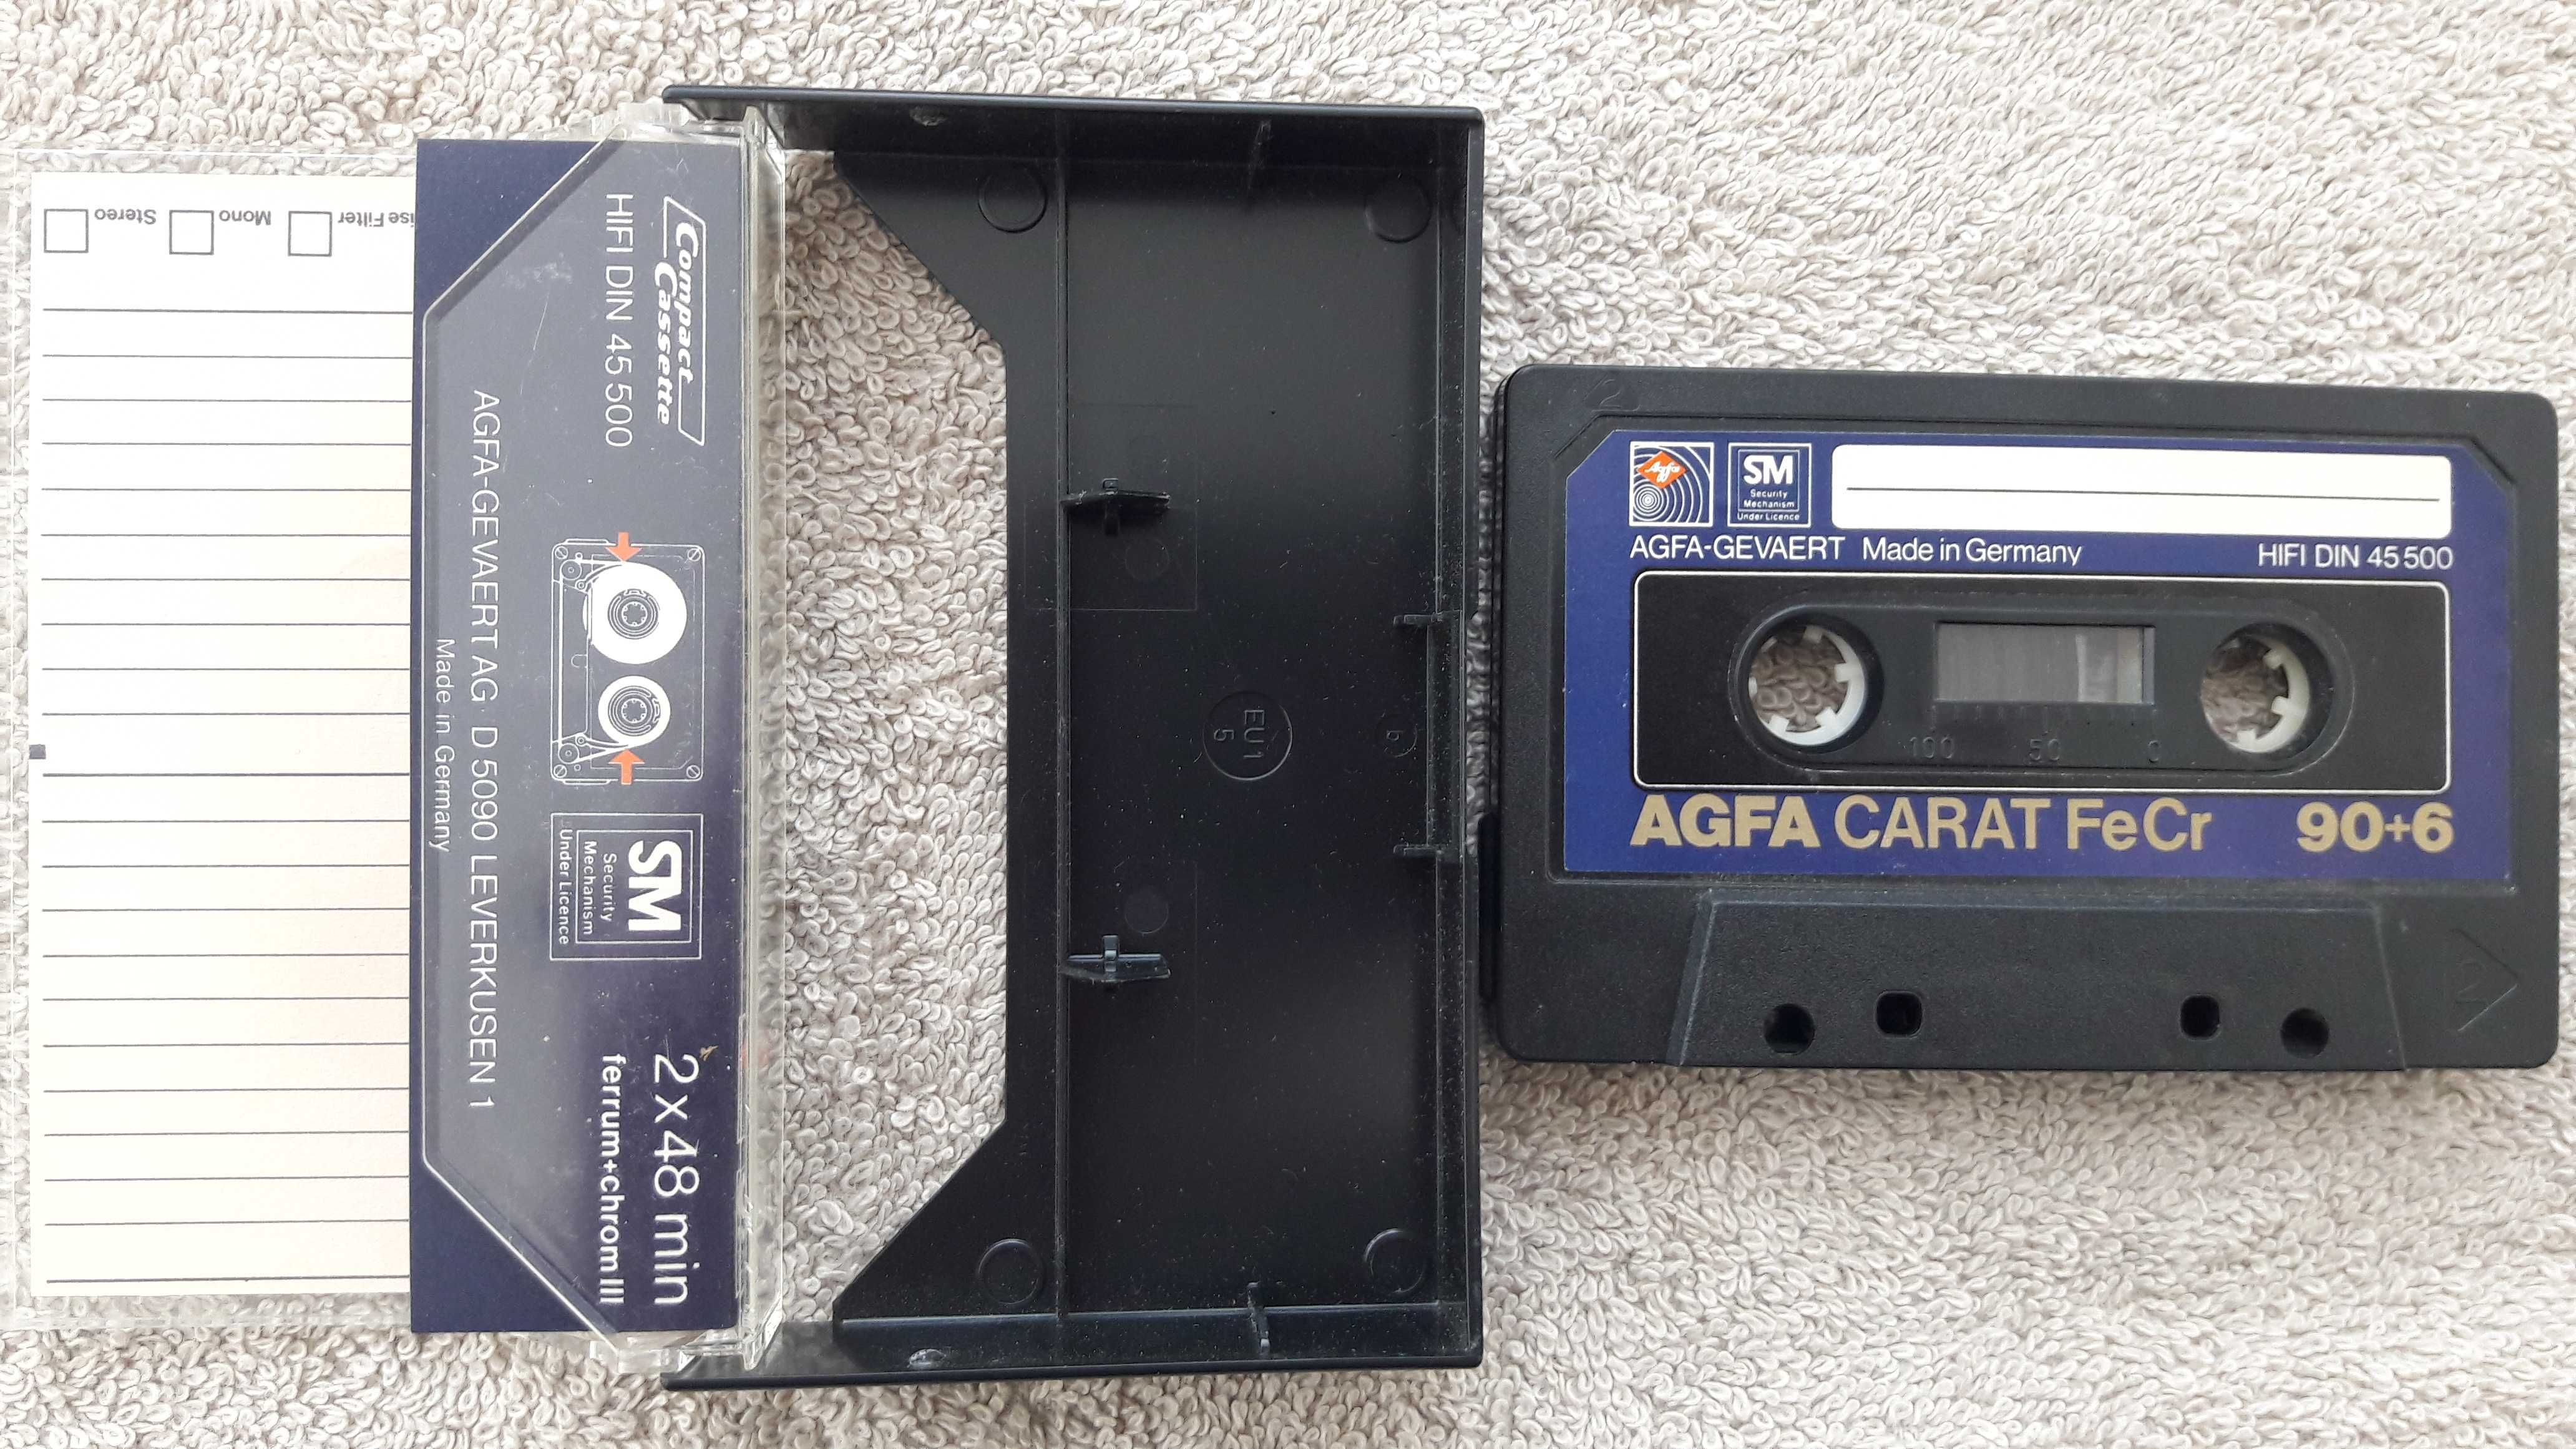 Аудиокассеты 2шт. AGFA Stereochrom 90+6 и Carat 90+6 для Коллекции